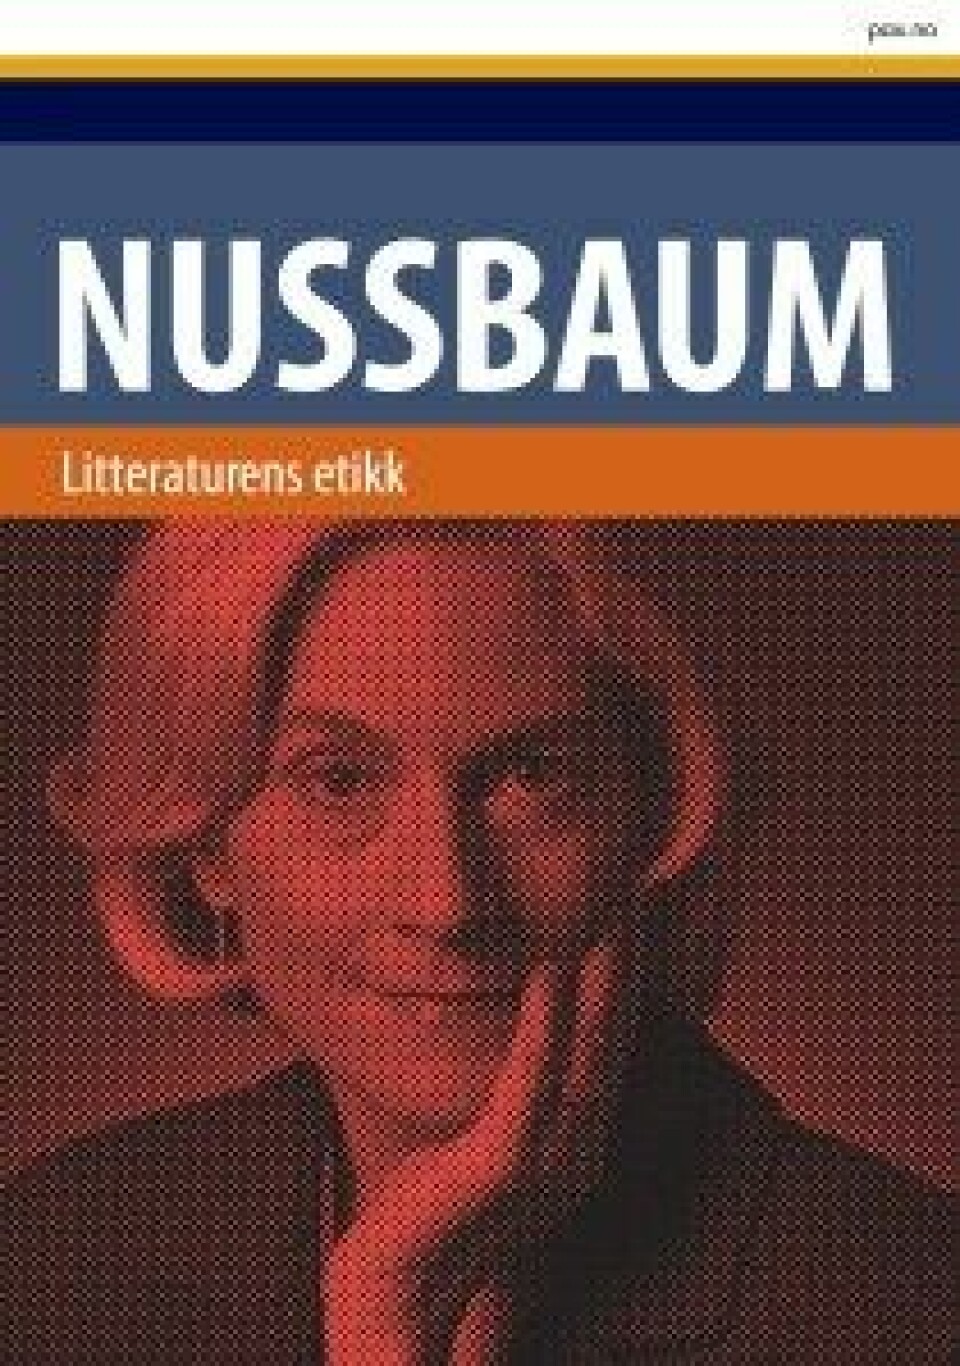 Litteraturens etikk av Martha Nussbaum, (oversatt av Agnete Øye) Pax forlag, 2016.